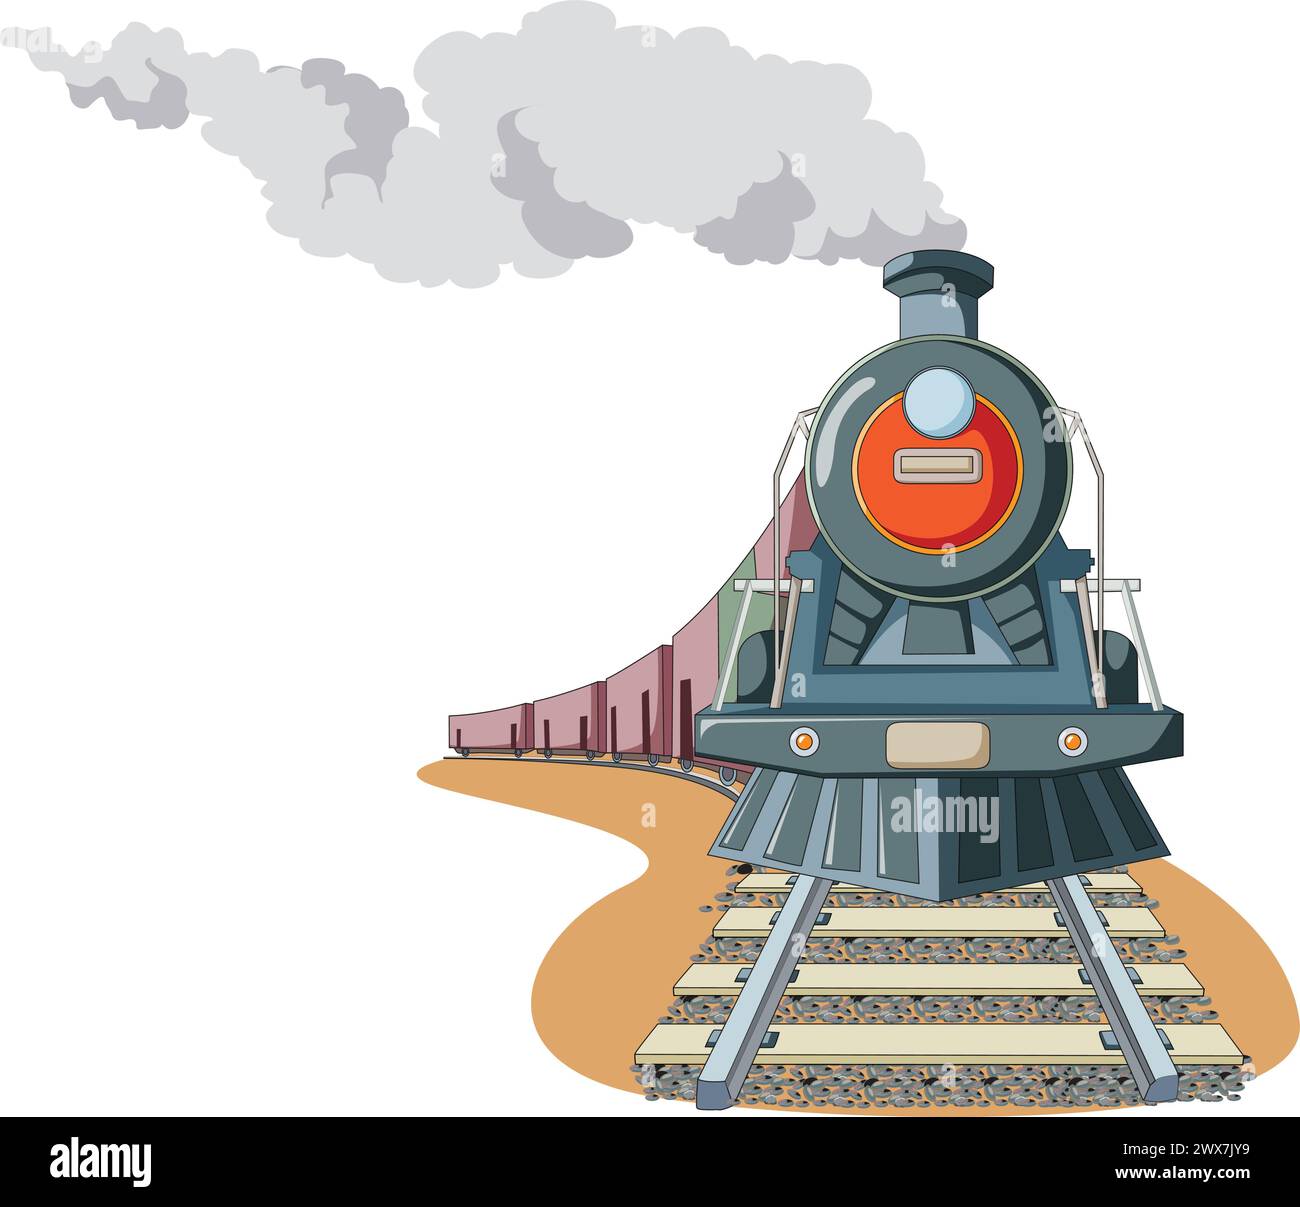 Vecteur de dessin animé de train de vapeur Illustration de Vecteur